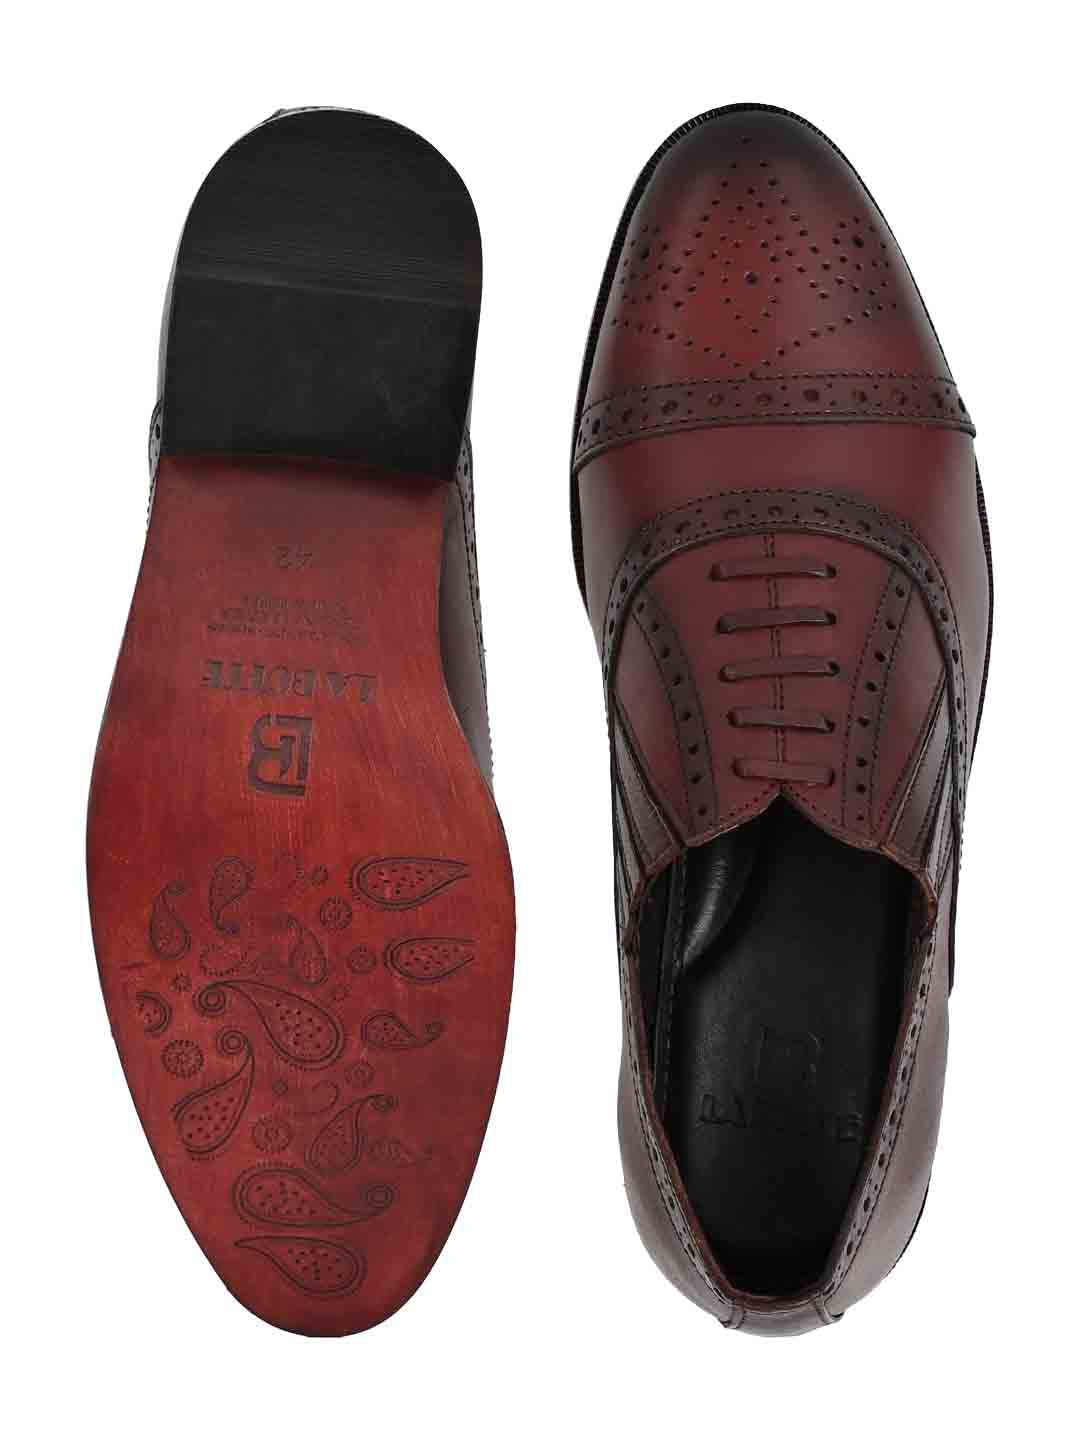 Footwear, Men Footwear, Burgundy Oxford Shoes